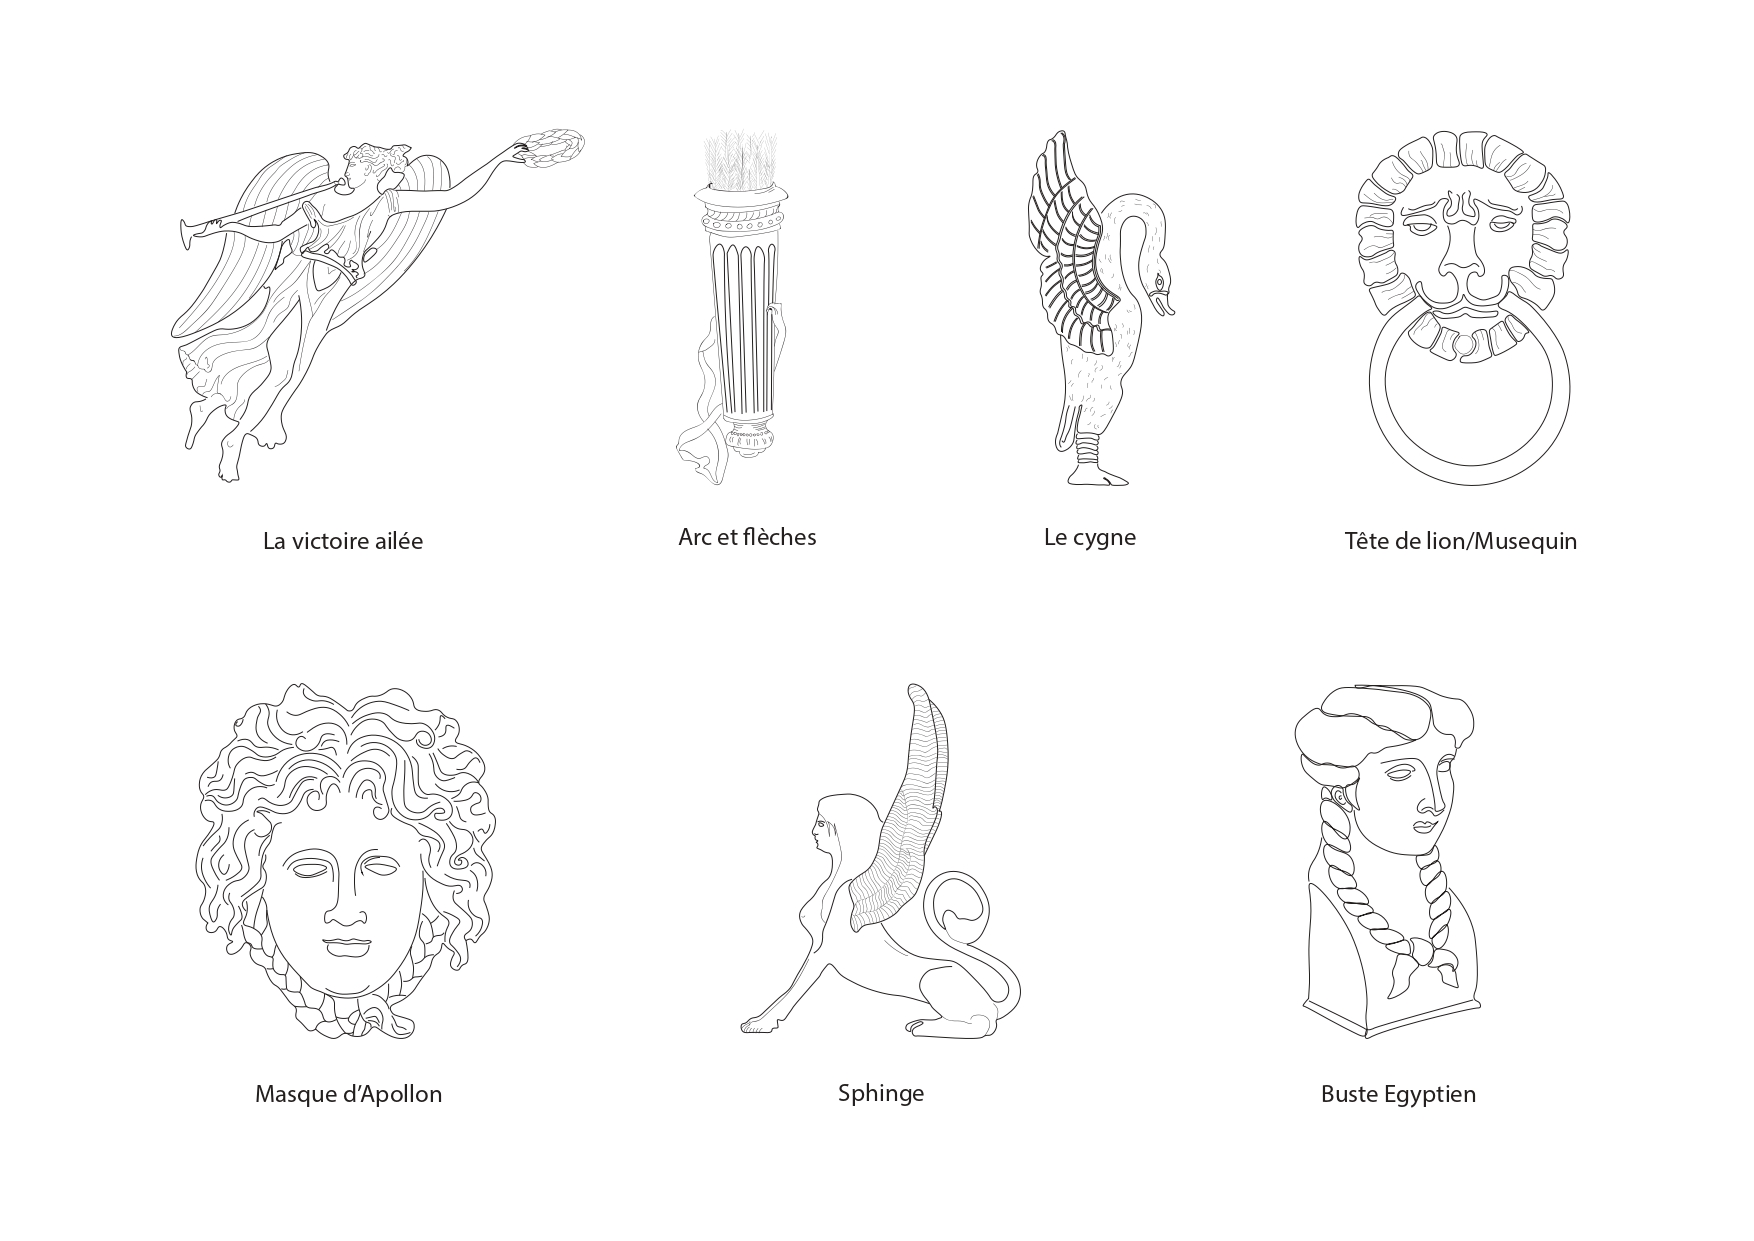 Les motifs gréco-romains